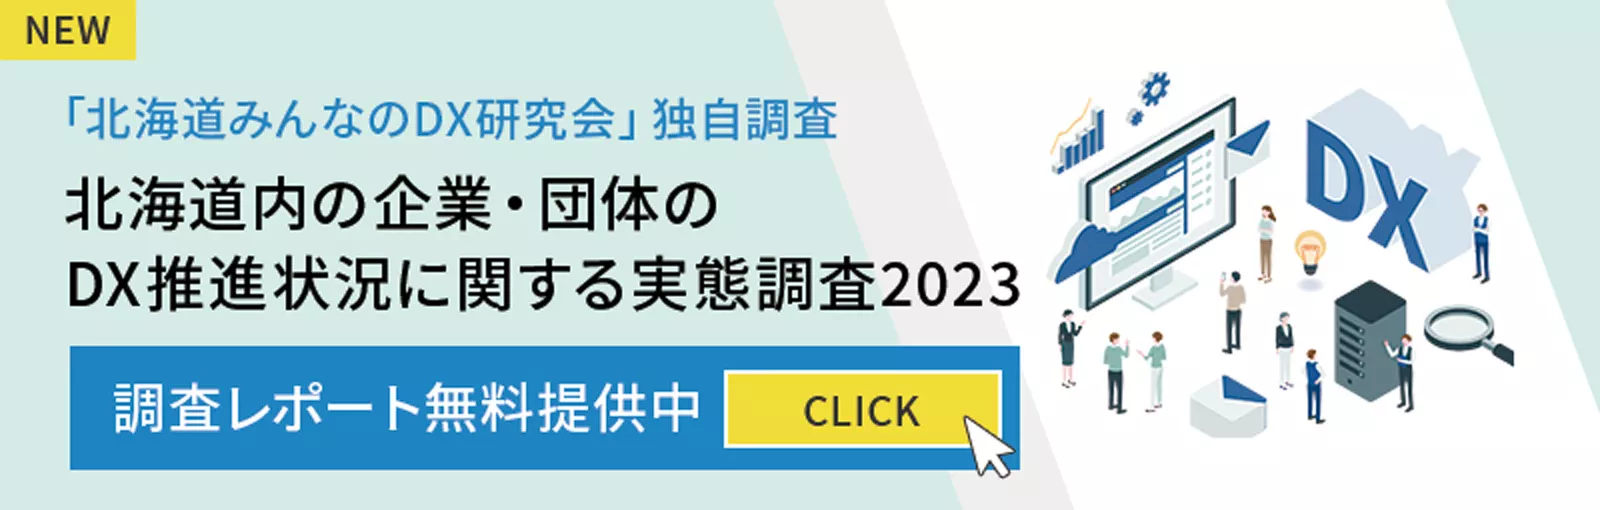 北海道内の企業・団体のDX推進状況に関する実態調査2023